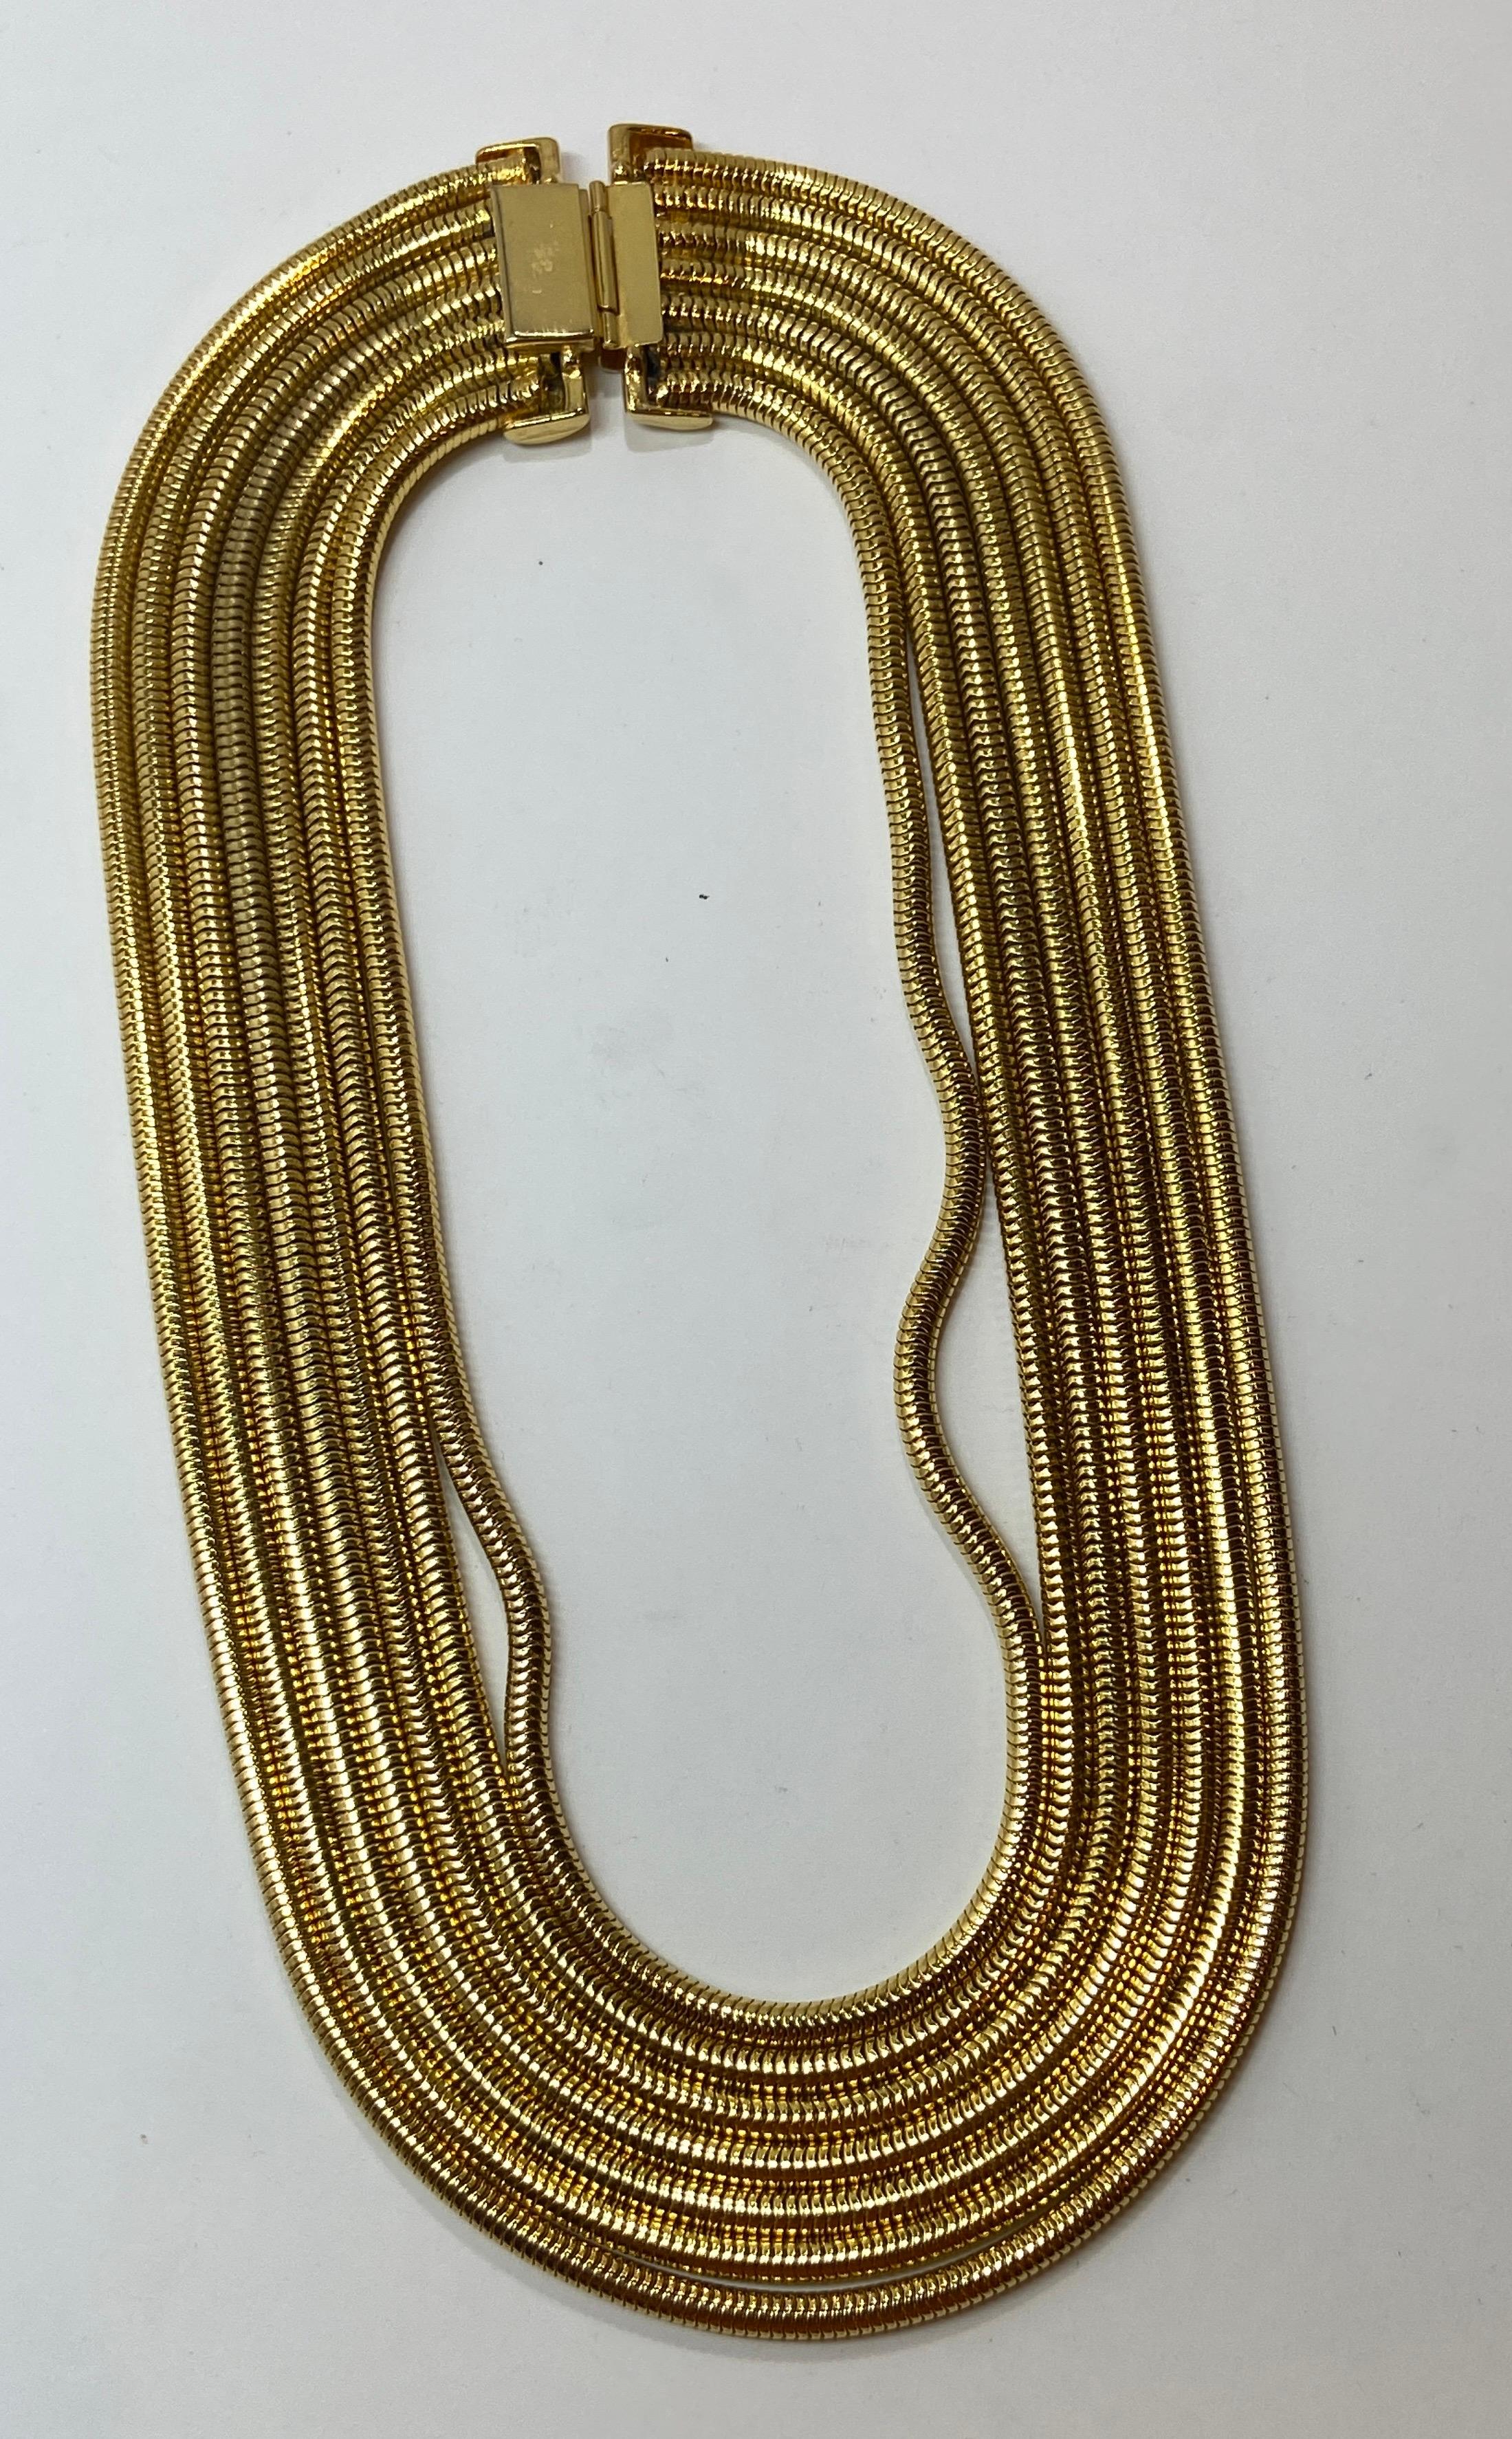 Multi-Linked Smooth Snake-Link Polished Gold Hardware Necklace For Sale 1